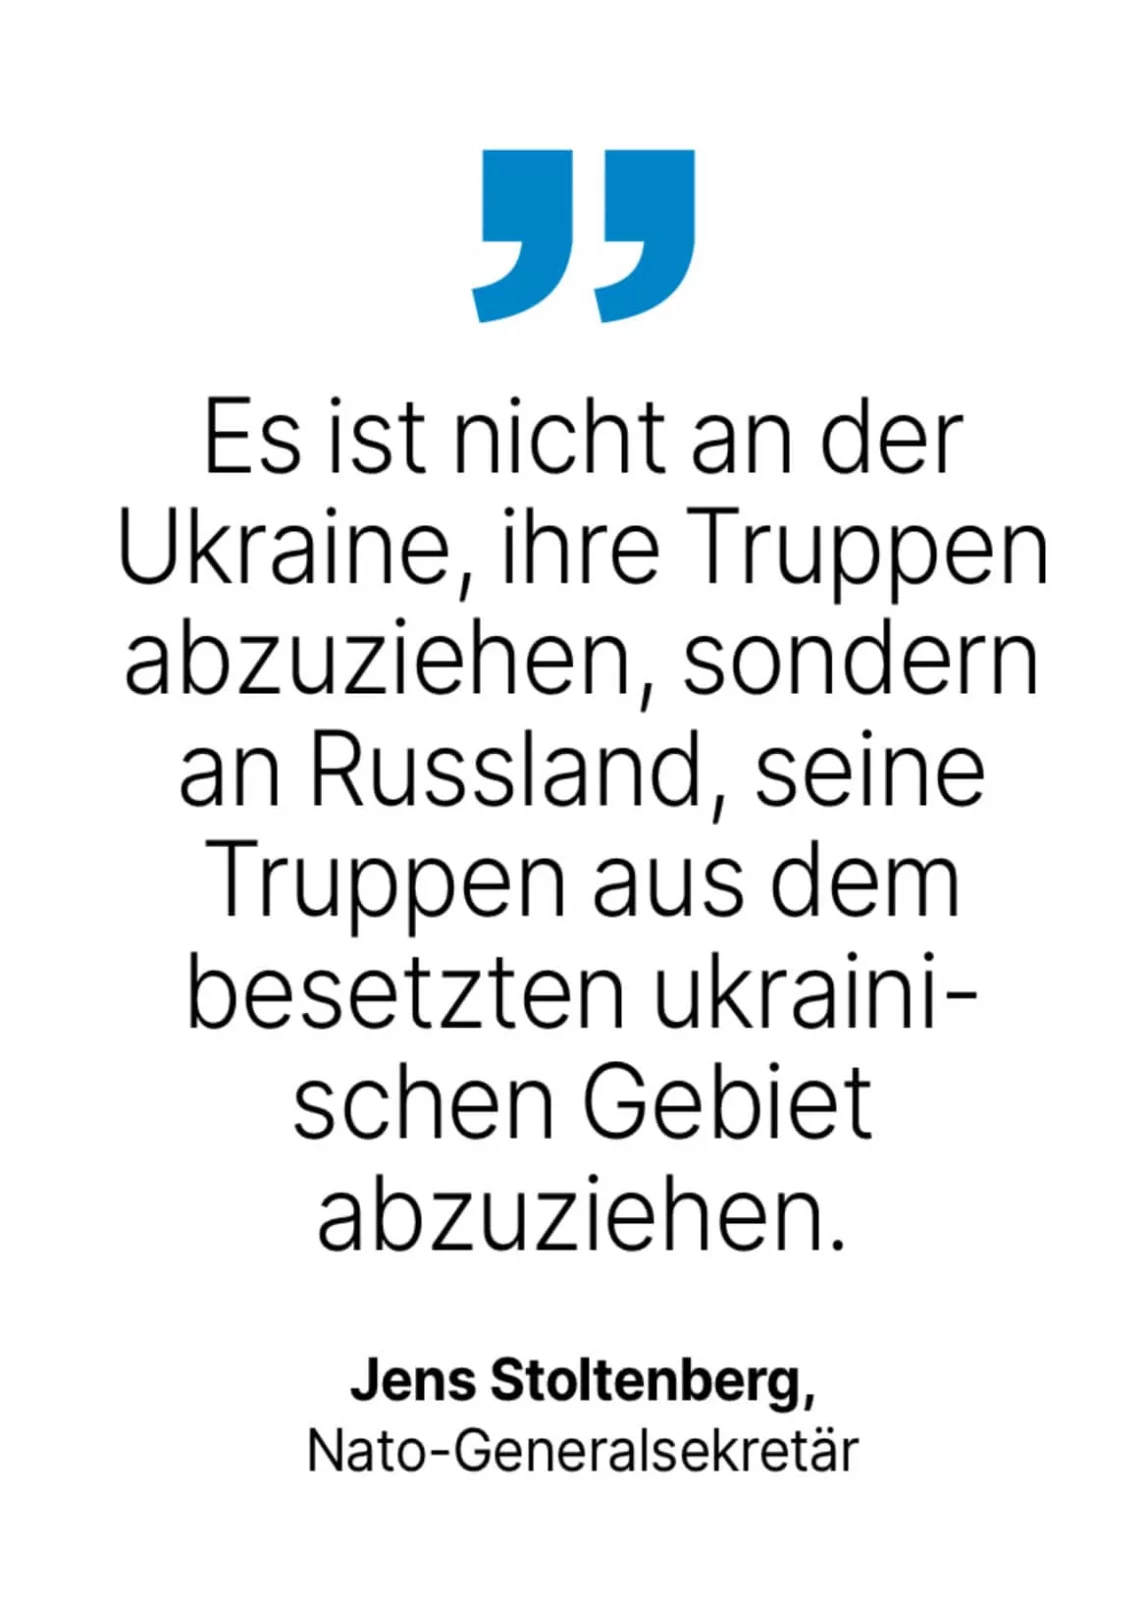 Jens Stoltenberg, Nato-Generalsekretär: Es ist nicht an der Ukraine, ihre Truppen abzuziehen, sondern an Russland, seine Truppen aus dem besetzten ukrainischen Gebiet abzuziehen.